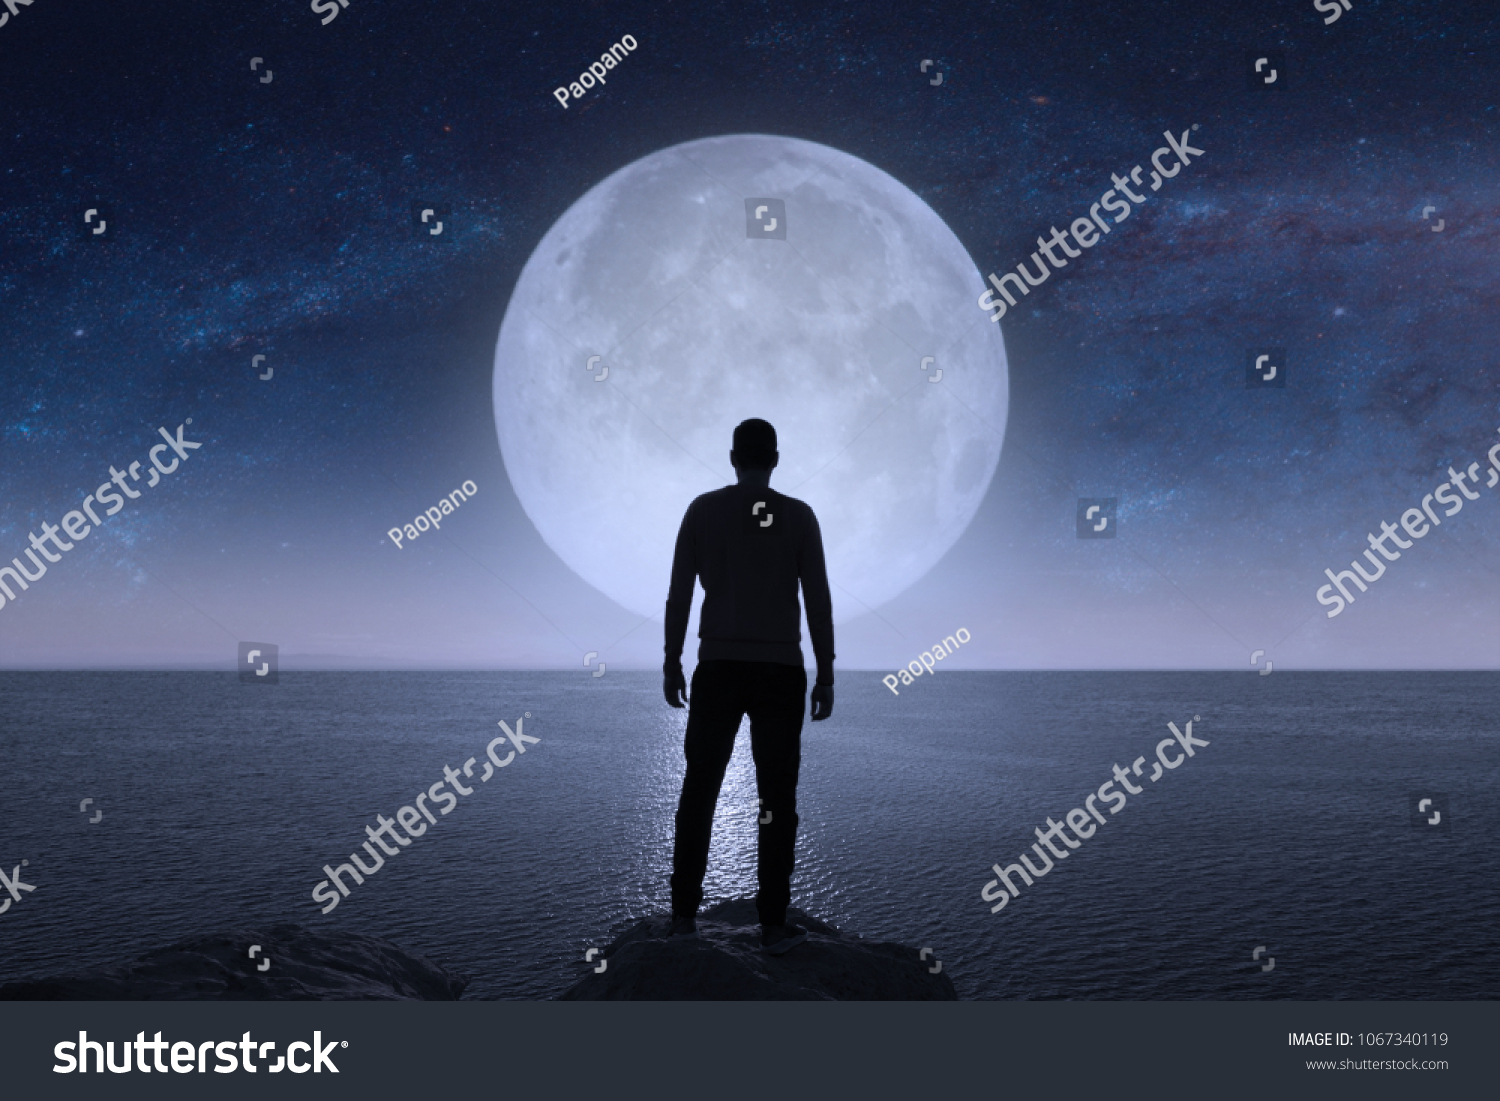 Looking at the moon. Человек под луной. Одинокий человек и Луна. Человек на Луне. Парень под луной.